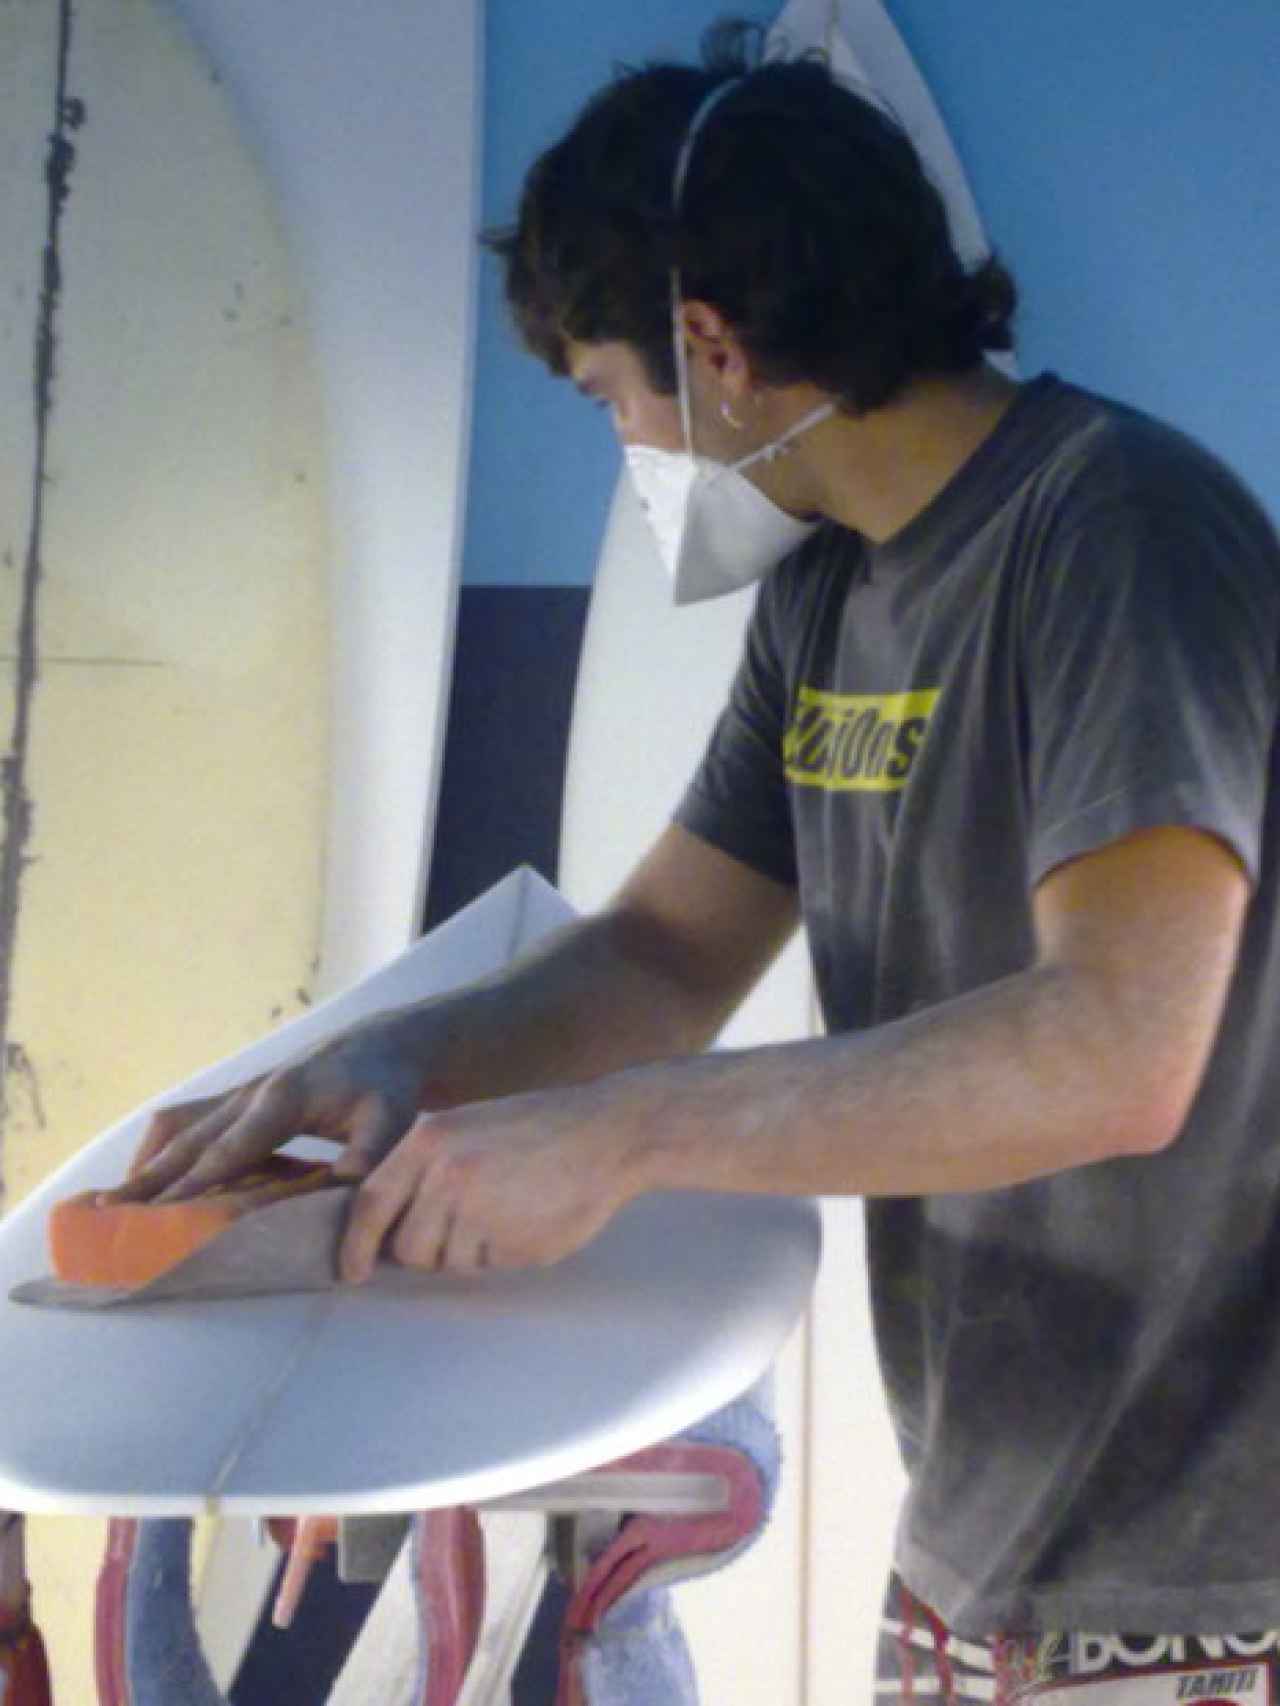 Joseba Arguiñano estuvo un tiempo construyendo tablas de surf, pero lo tuvo que dejar para dedicarse al 100% a la repostería.